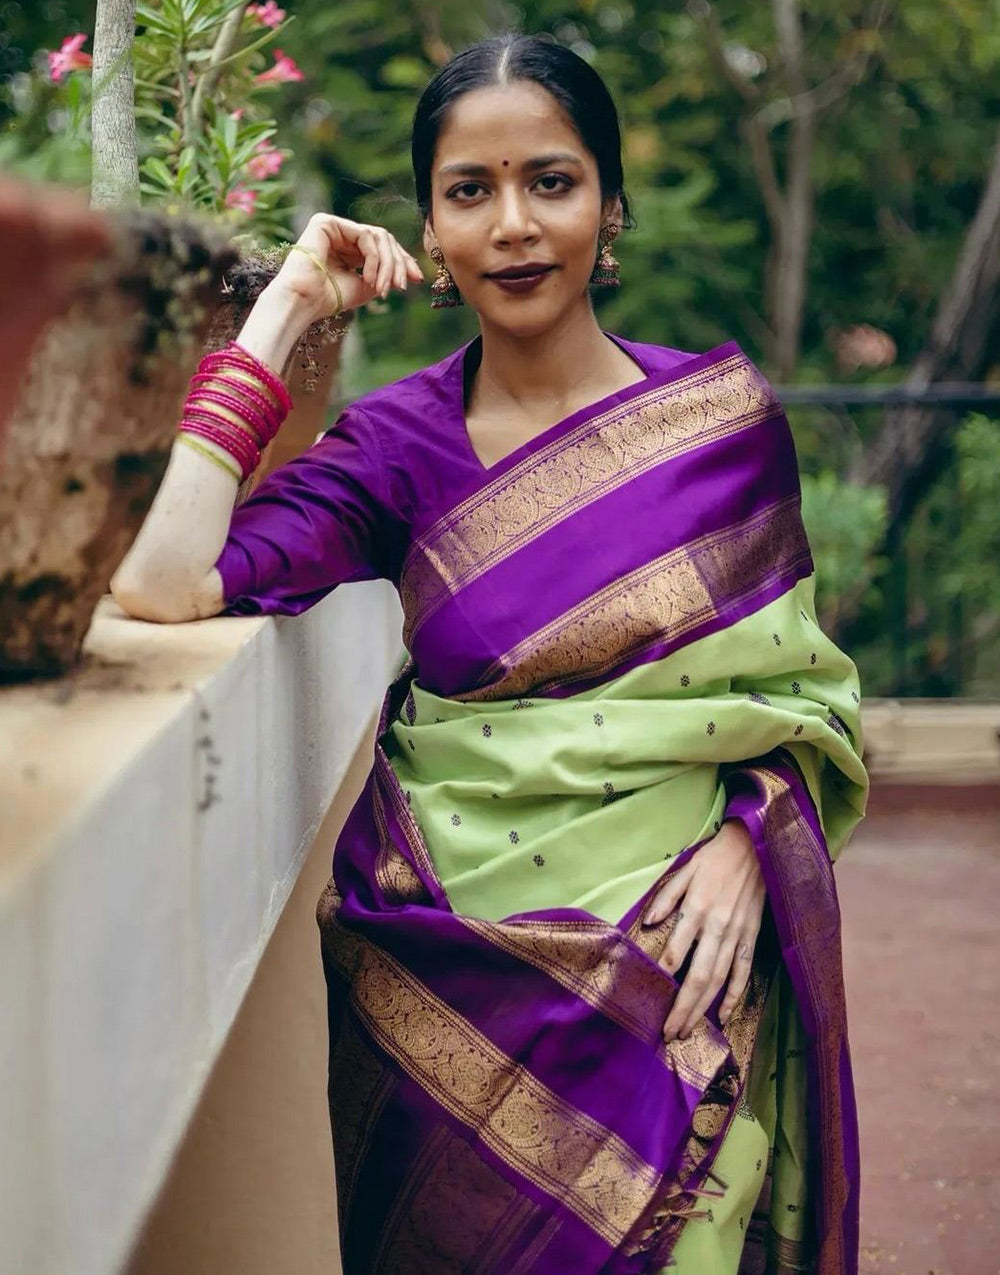 Green & Purple Banarasi Soft Silk Saree With Zari Weaving Work